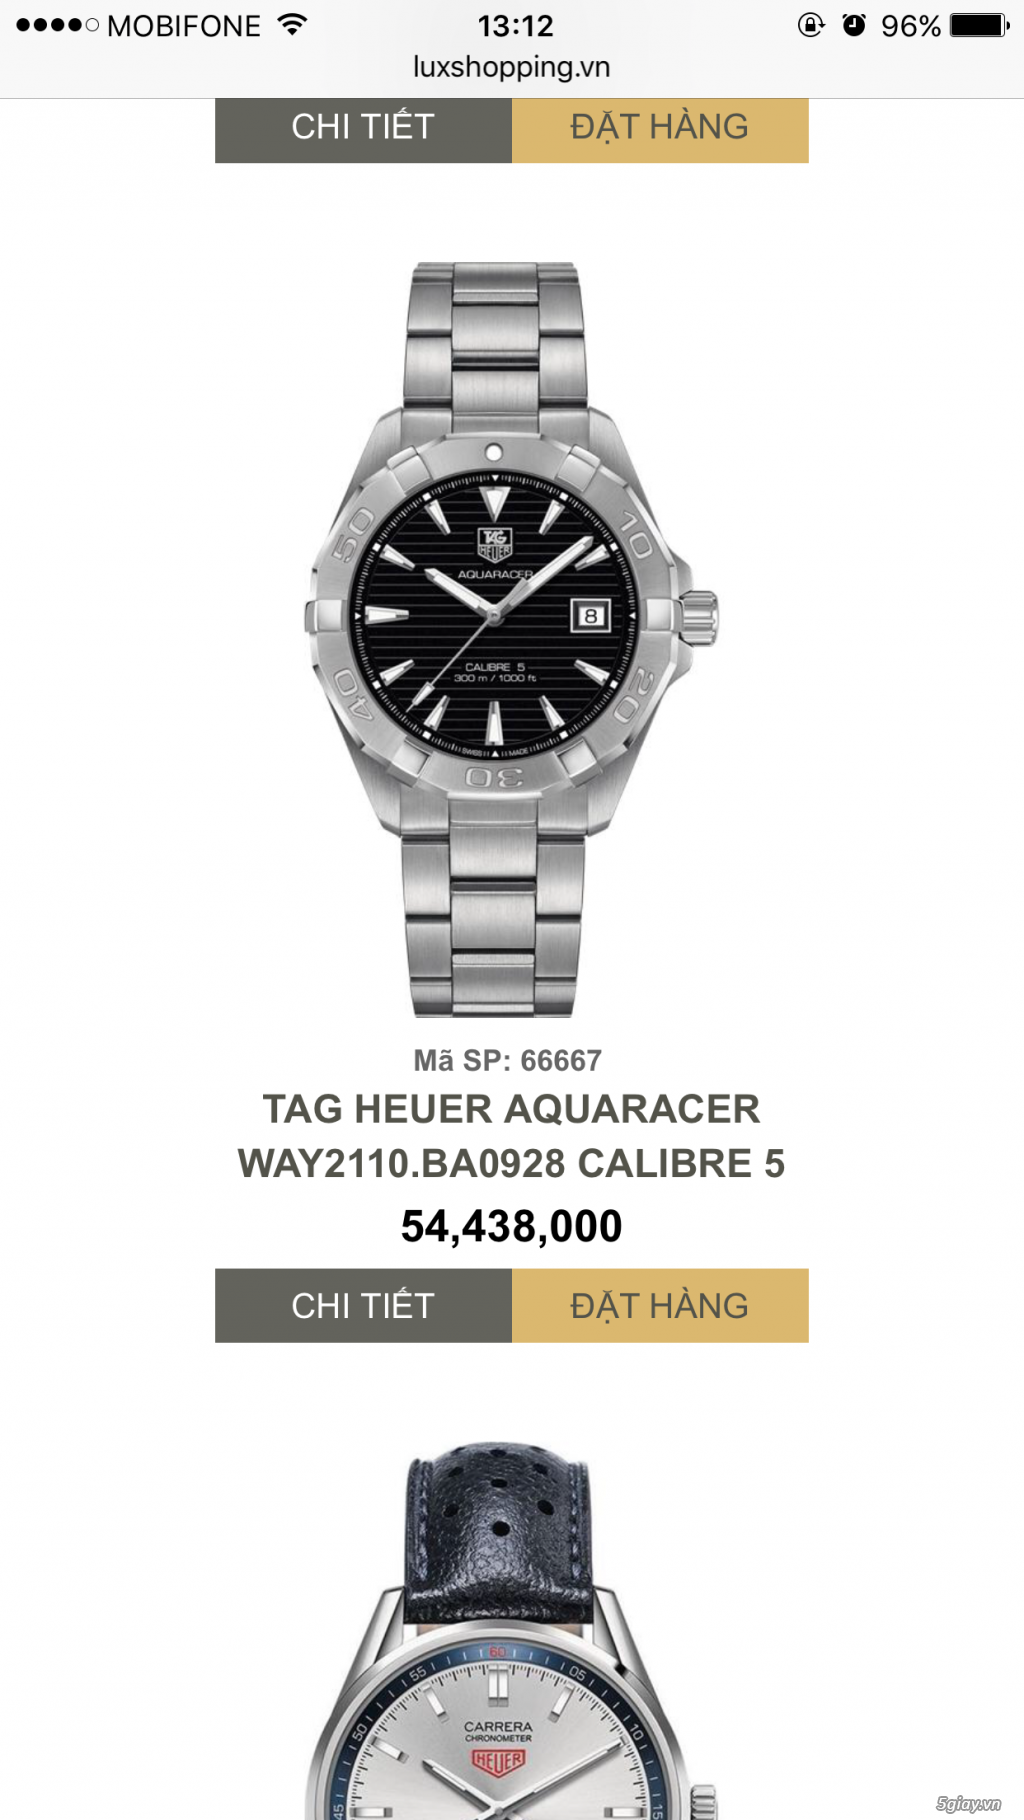 cần bán đồng hồ đeo tay TAG HEUER tự động chính hãng cực rẻ